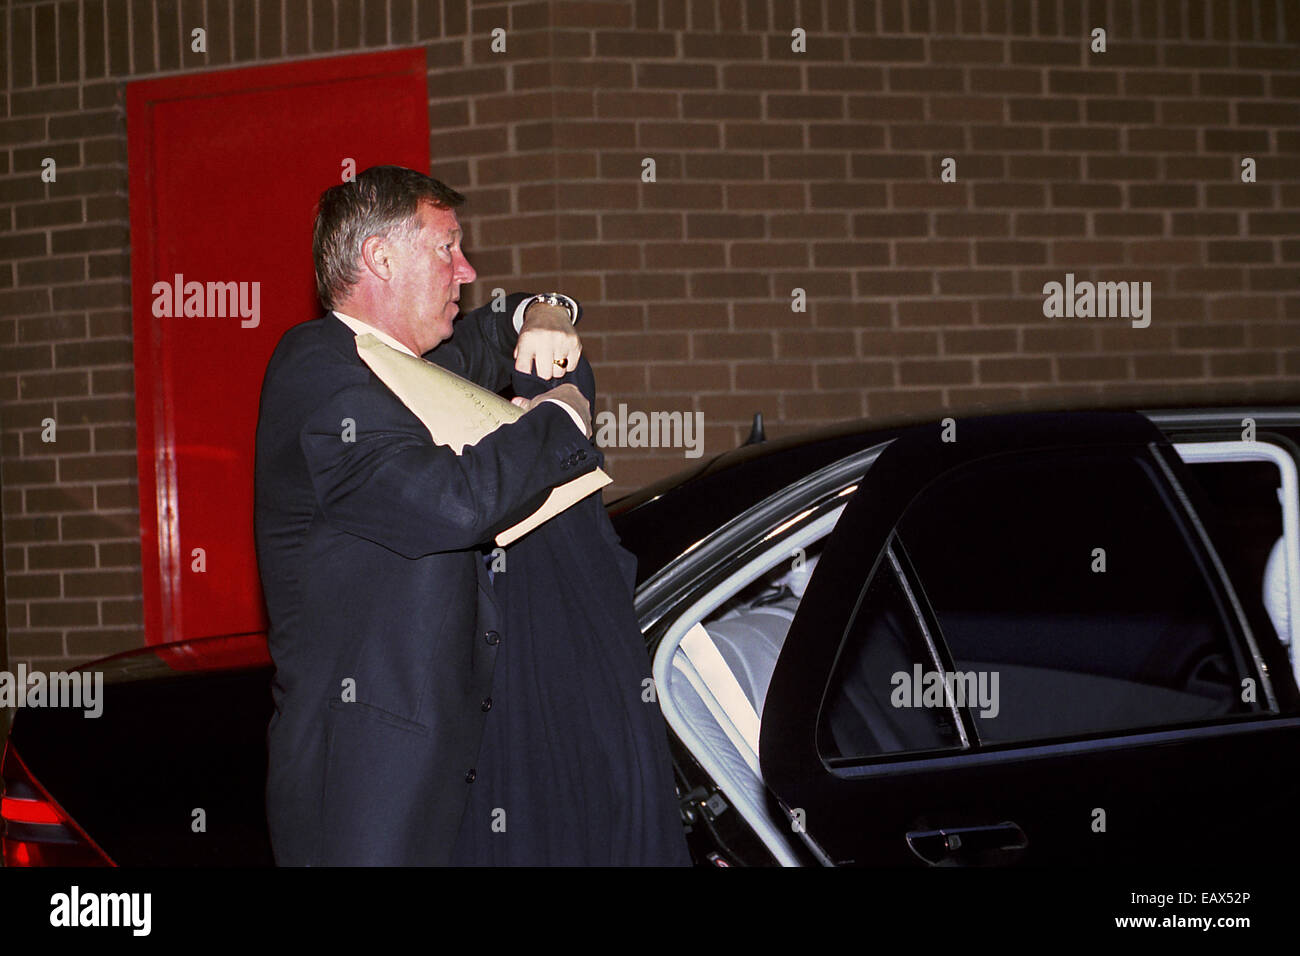 Sir Alex Ferguson, Manchester United, avant le match à domicile contre Leeds United à Old Trafford, Manchester le 21 octobre 2000. Reynold © Sumayku Banque D'Images